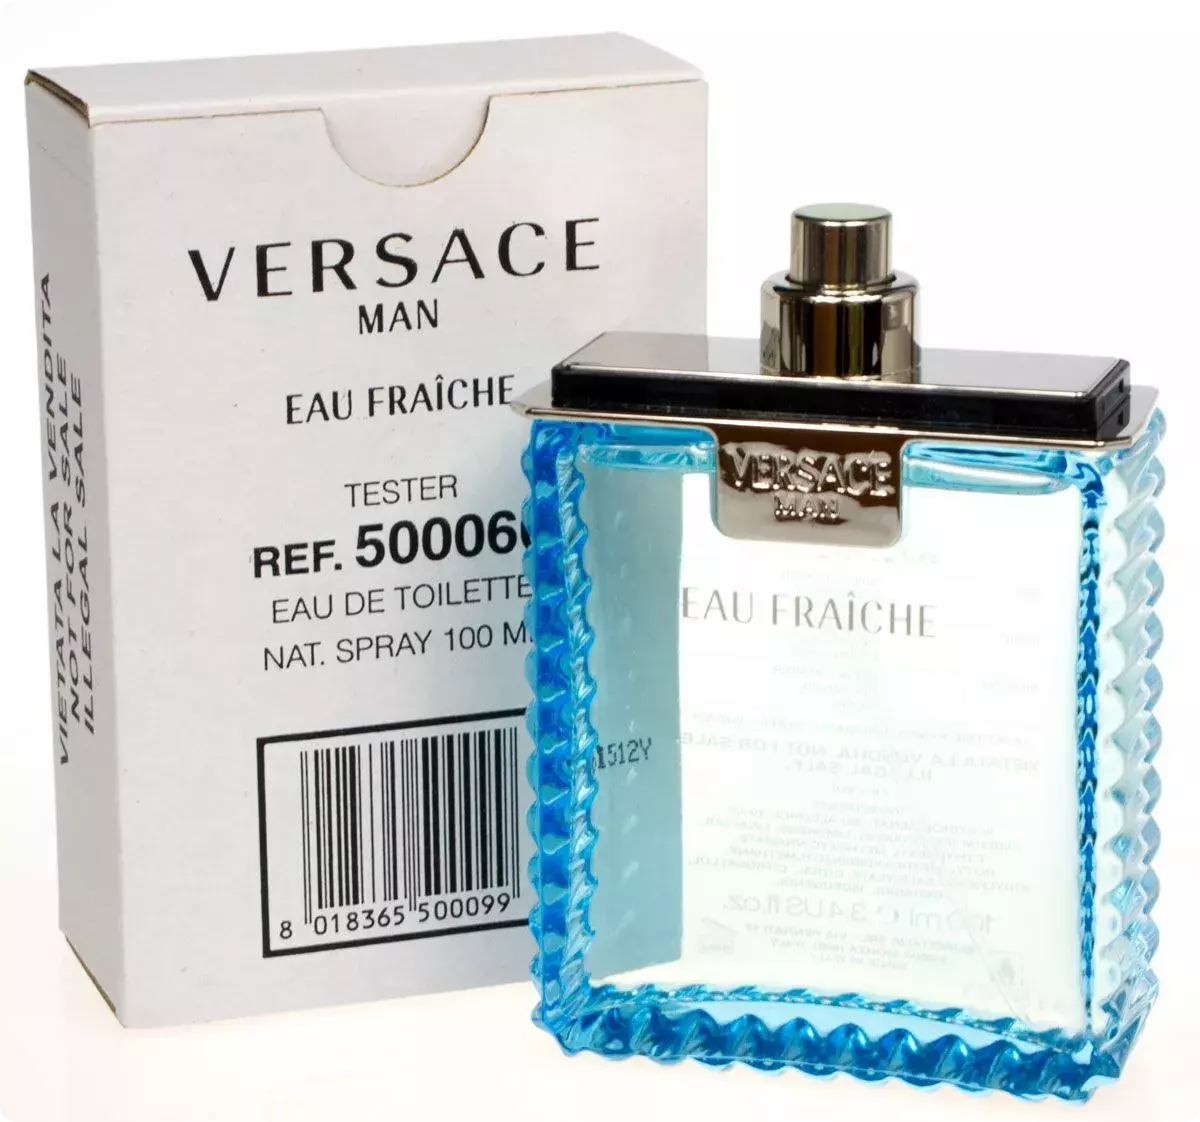 Versace man Eau Fraiche 100 ml. Versace man Eau Fraiche EDT 100ml. Versace Eau Fraiche men 100ml EDT Test. Тестер Versace man Eau Fraiche 100 ml.